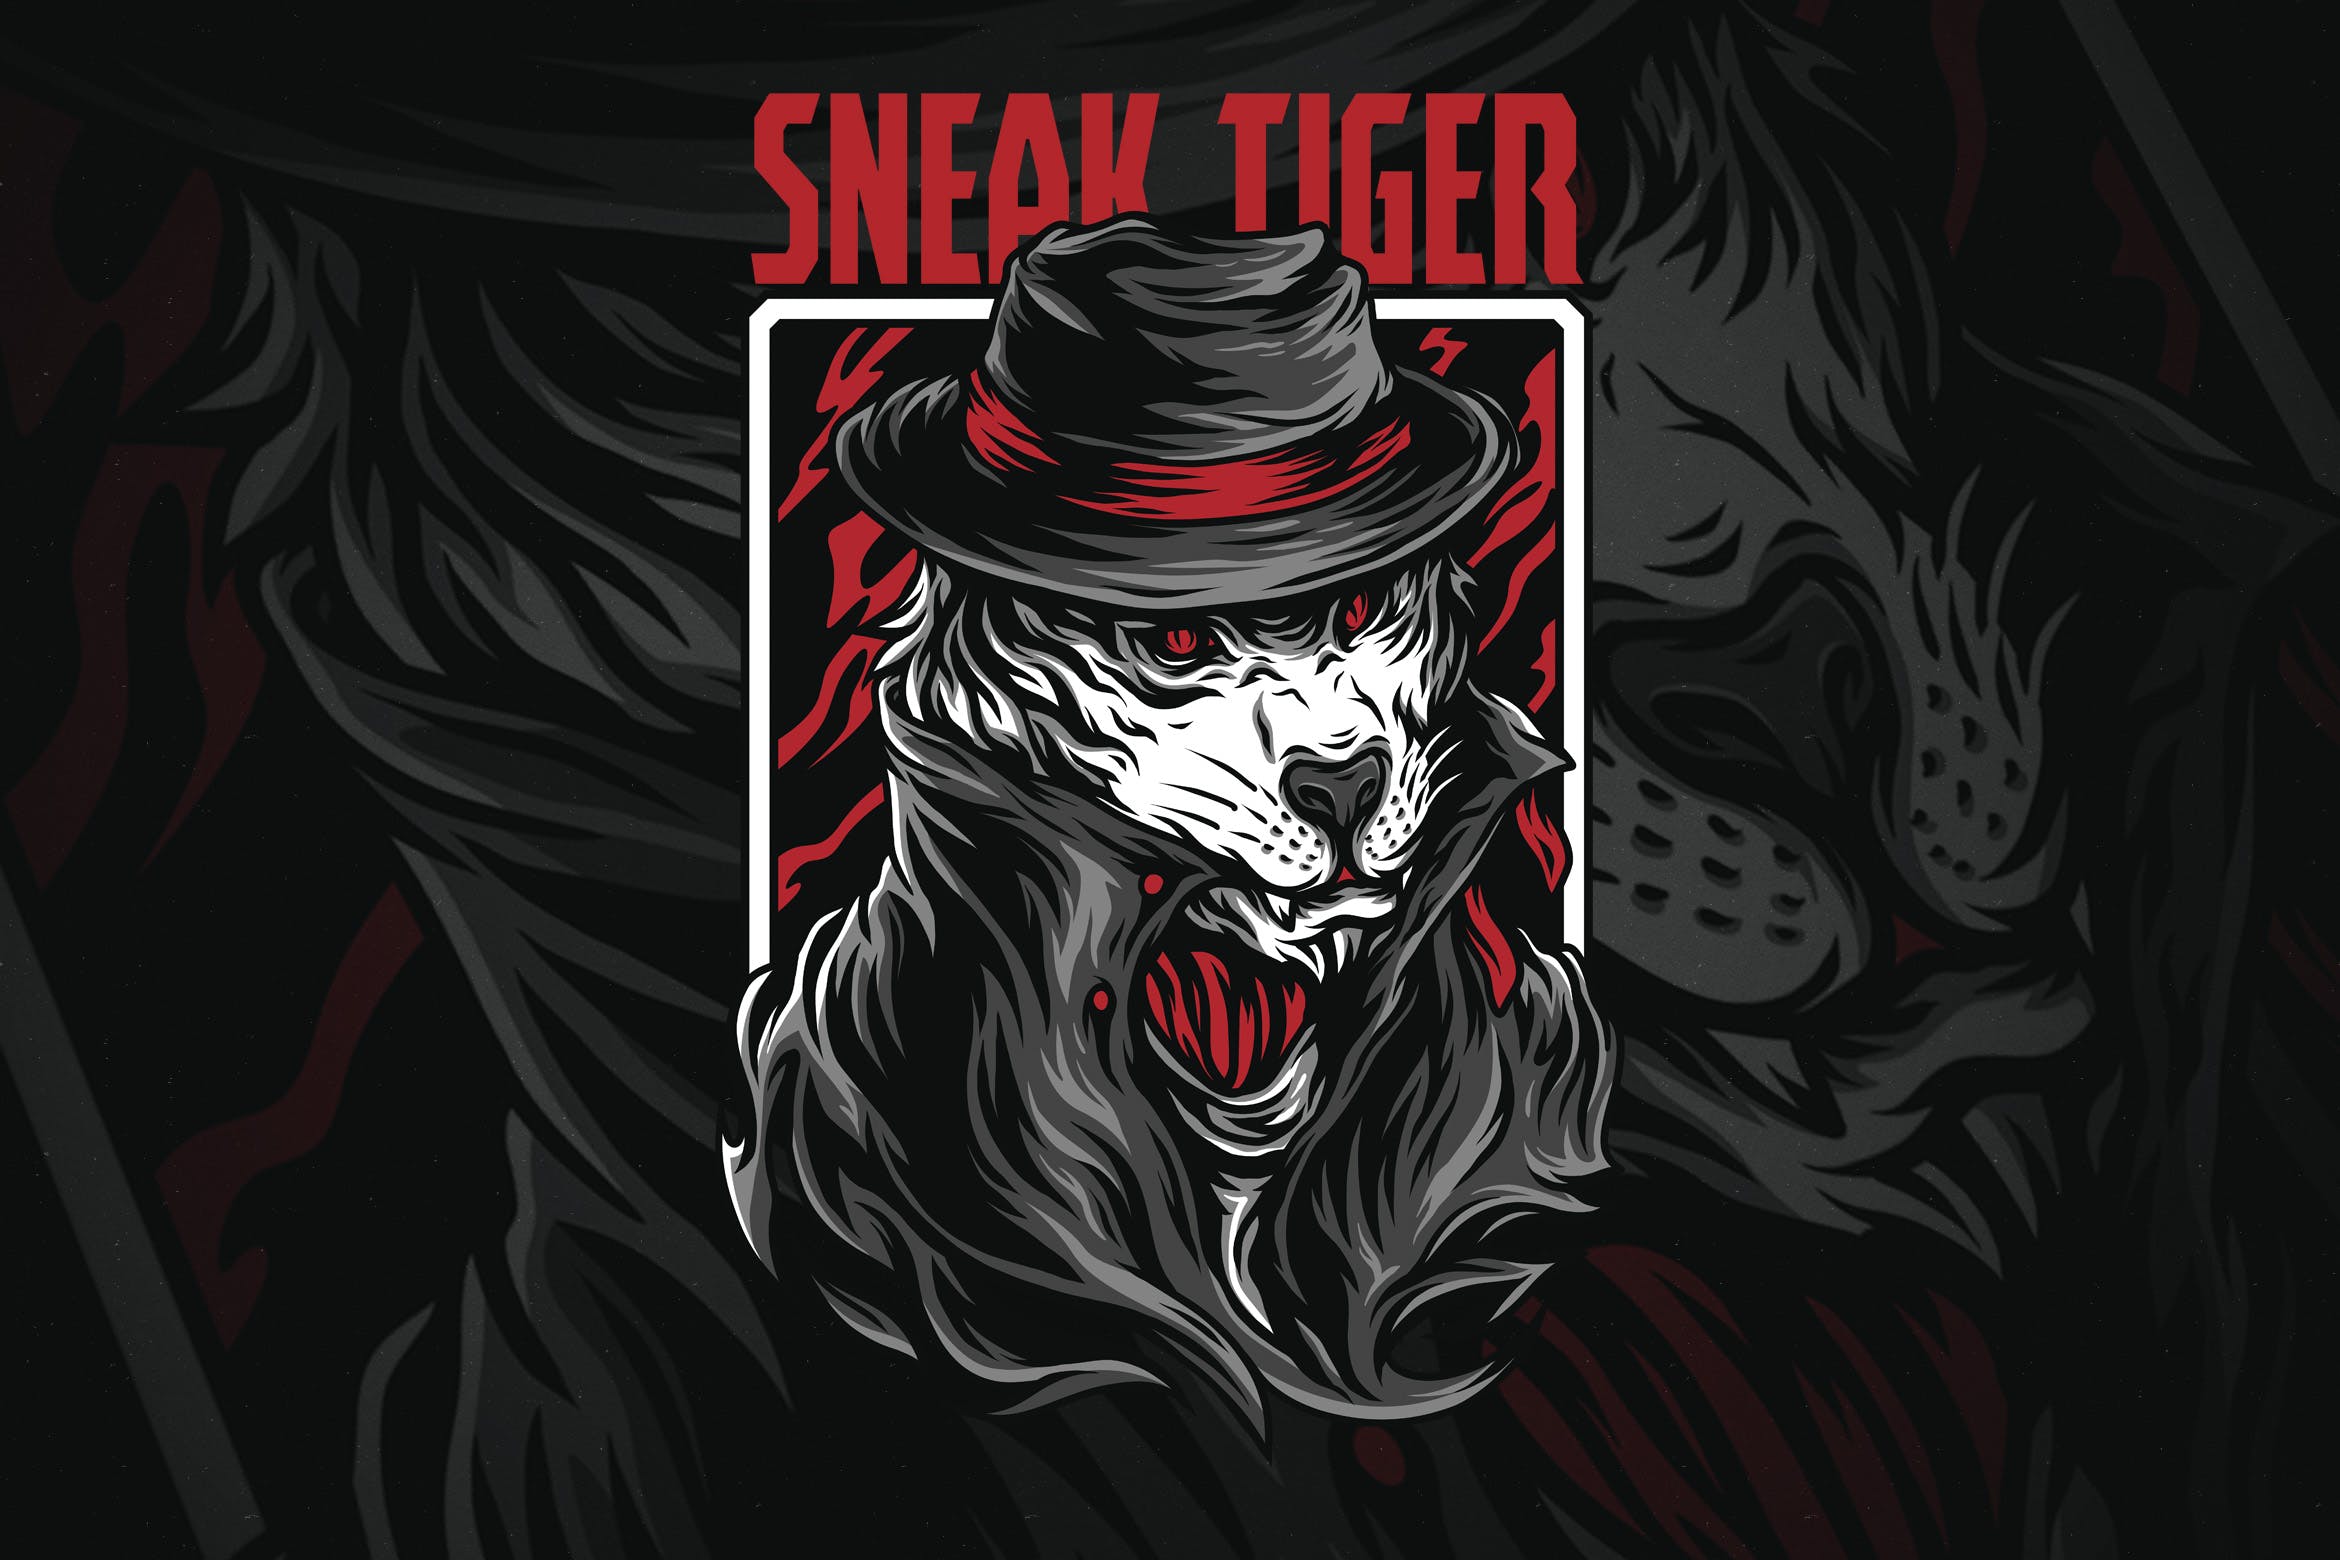 黑帮之虎潮牌T恤印花图案第一素材精选设计素材 Sneak Tiger插图